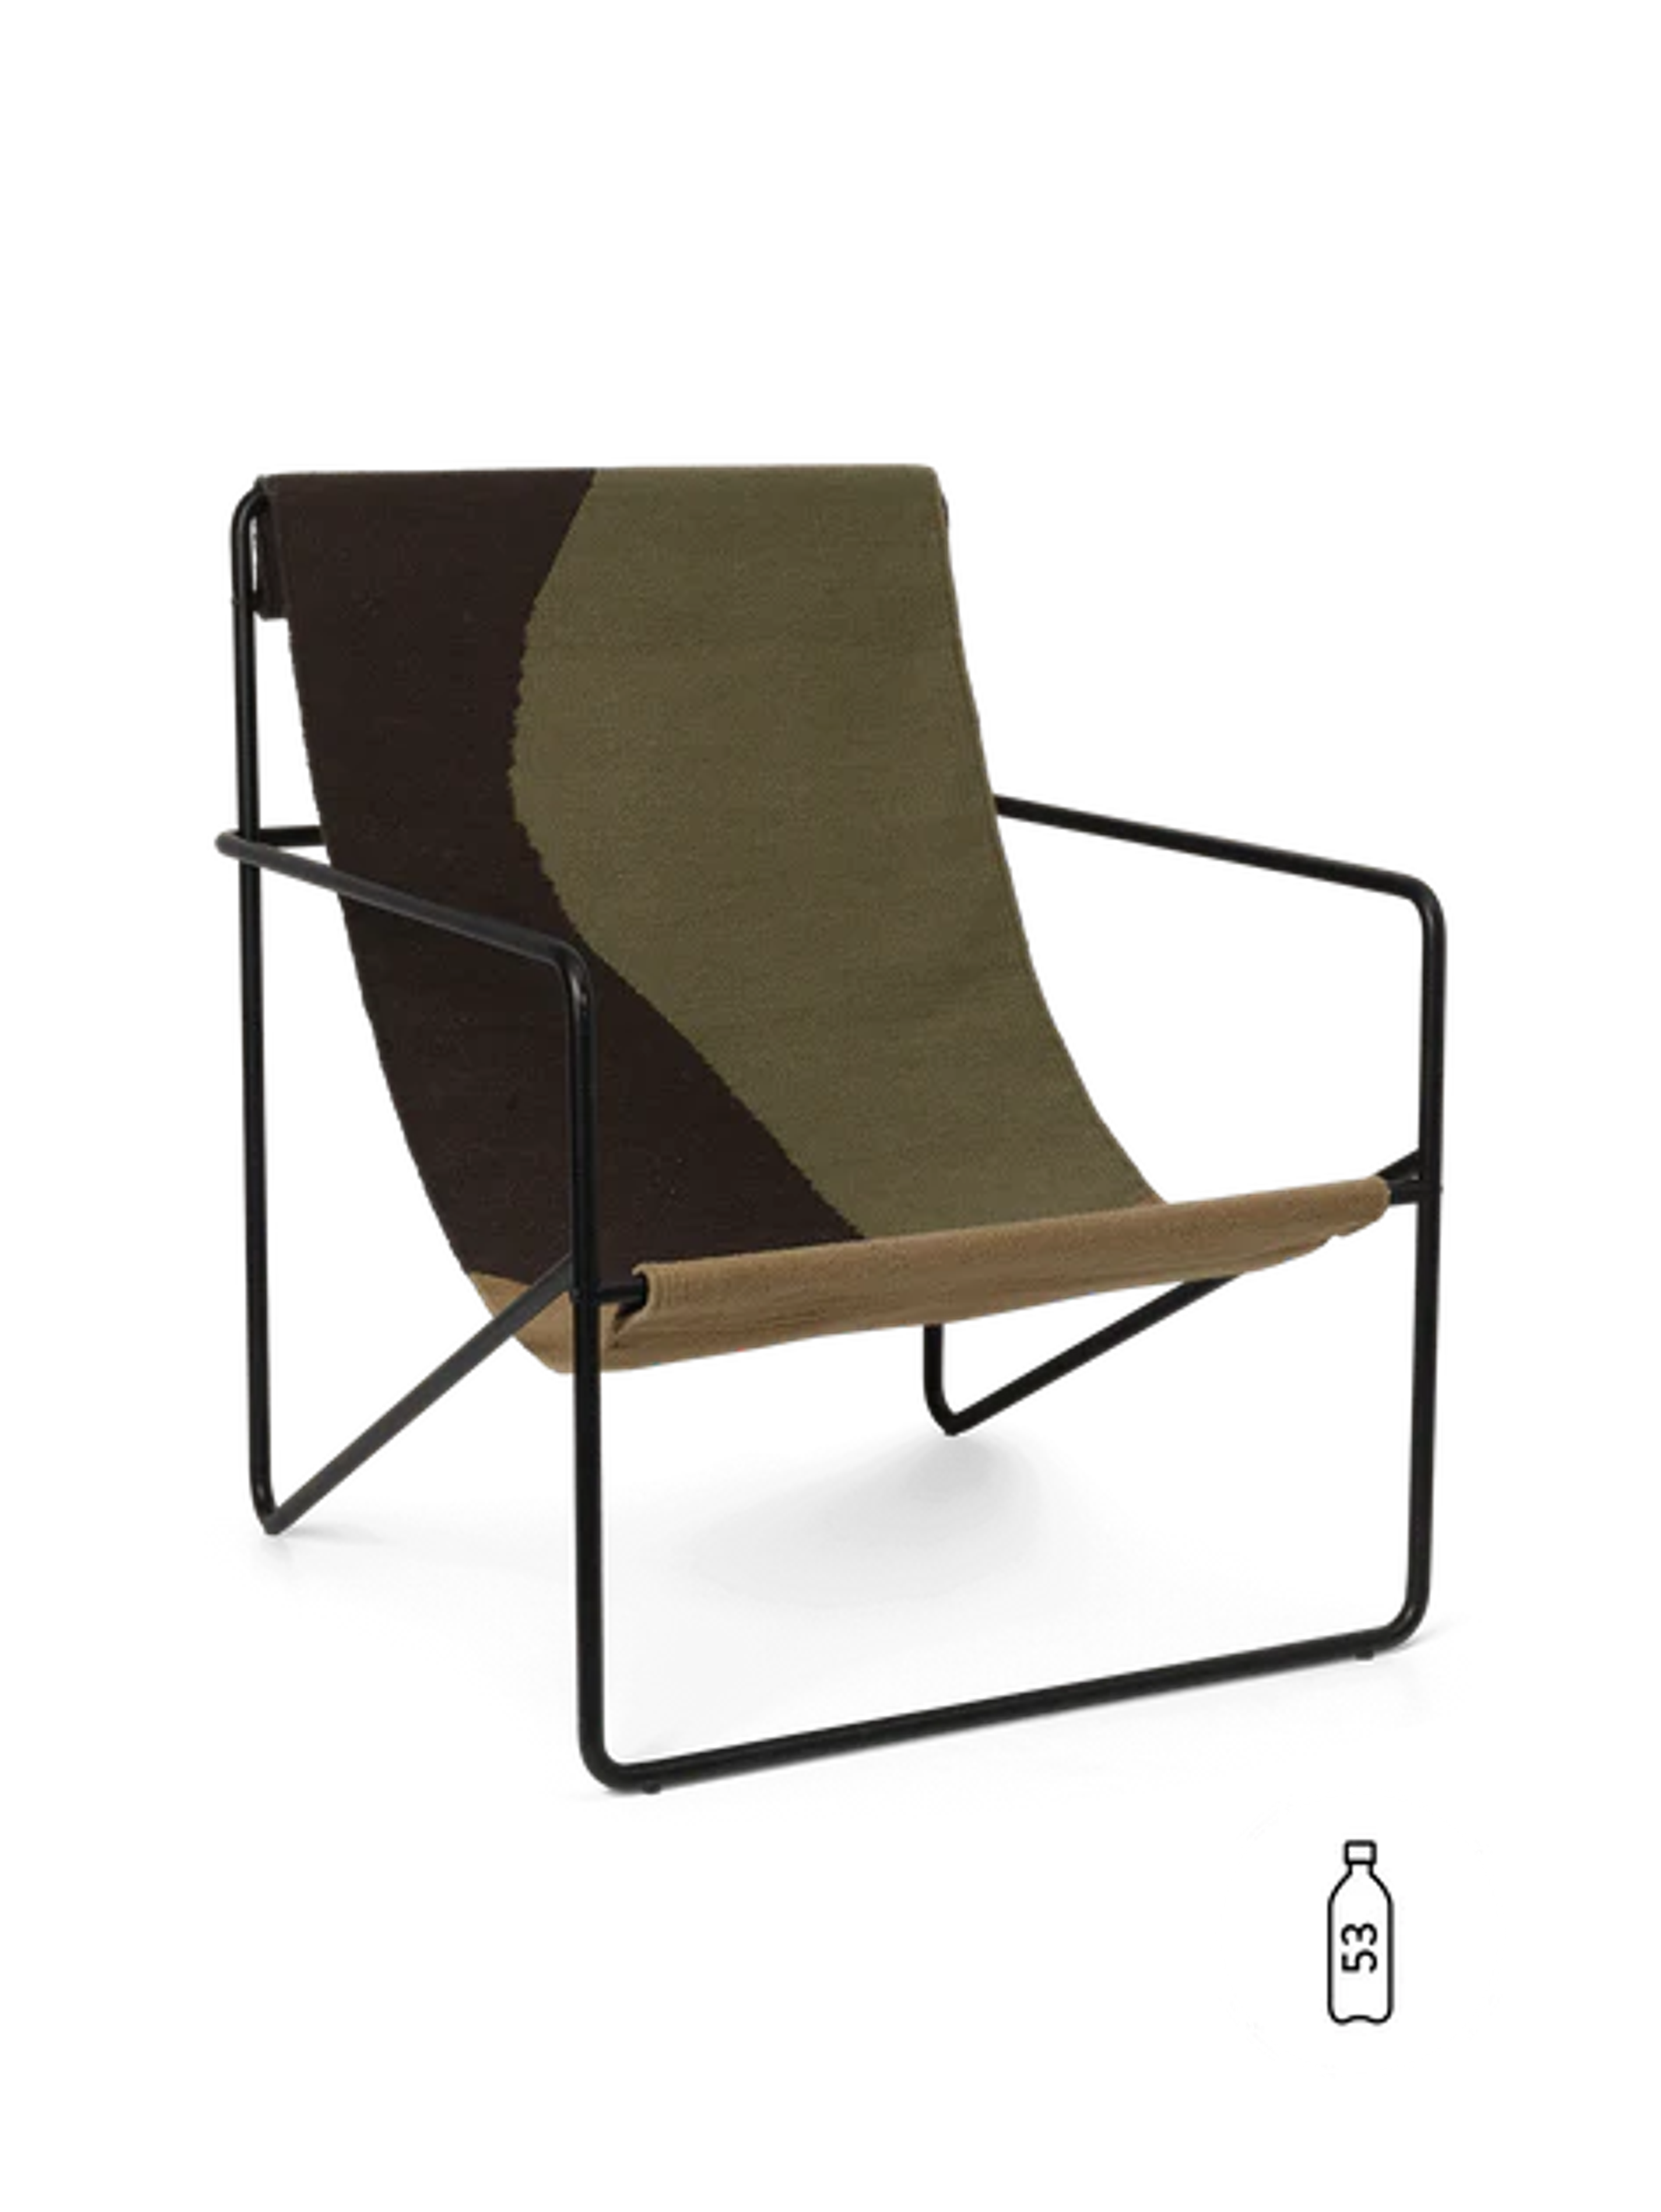 Desert Lounge Chair in Black/Dune | ferm LIVING